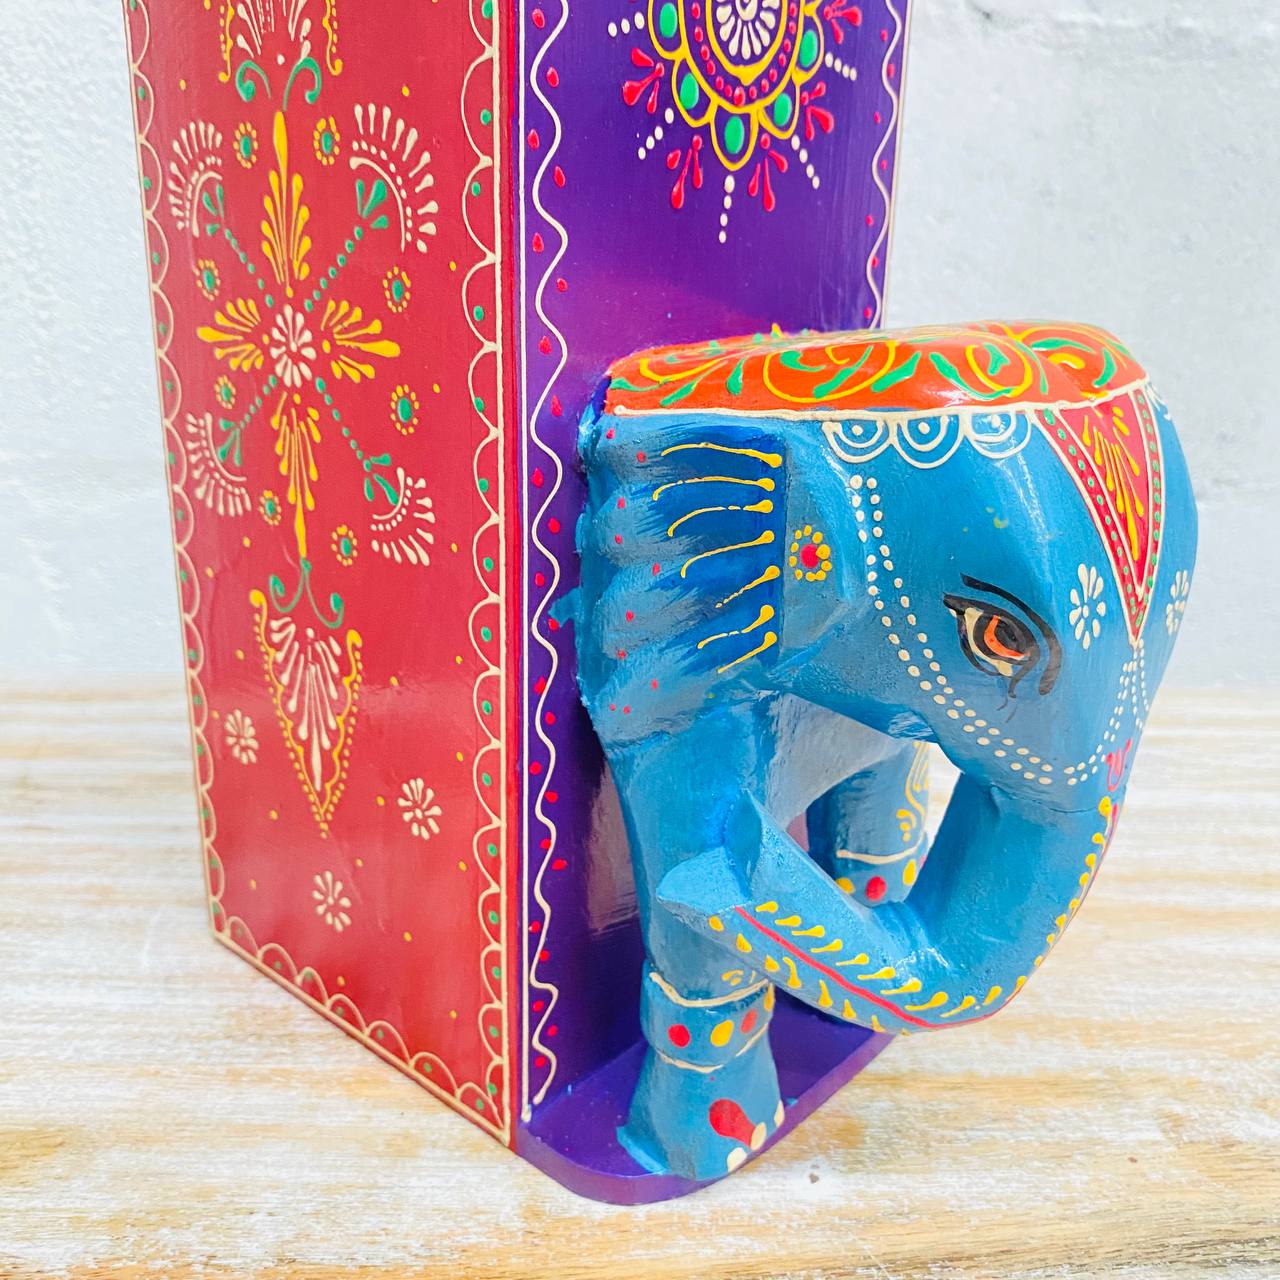 Caja Botellera "Elegancia Tallada" - Madera Tallada, Pintada a Mano con Diseños y Cabeza de Elefante